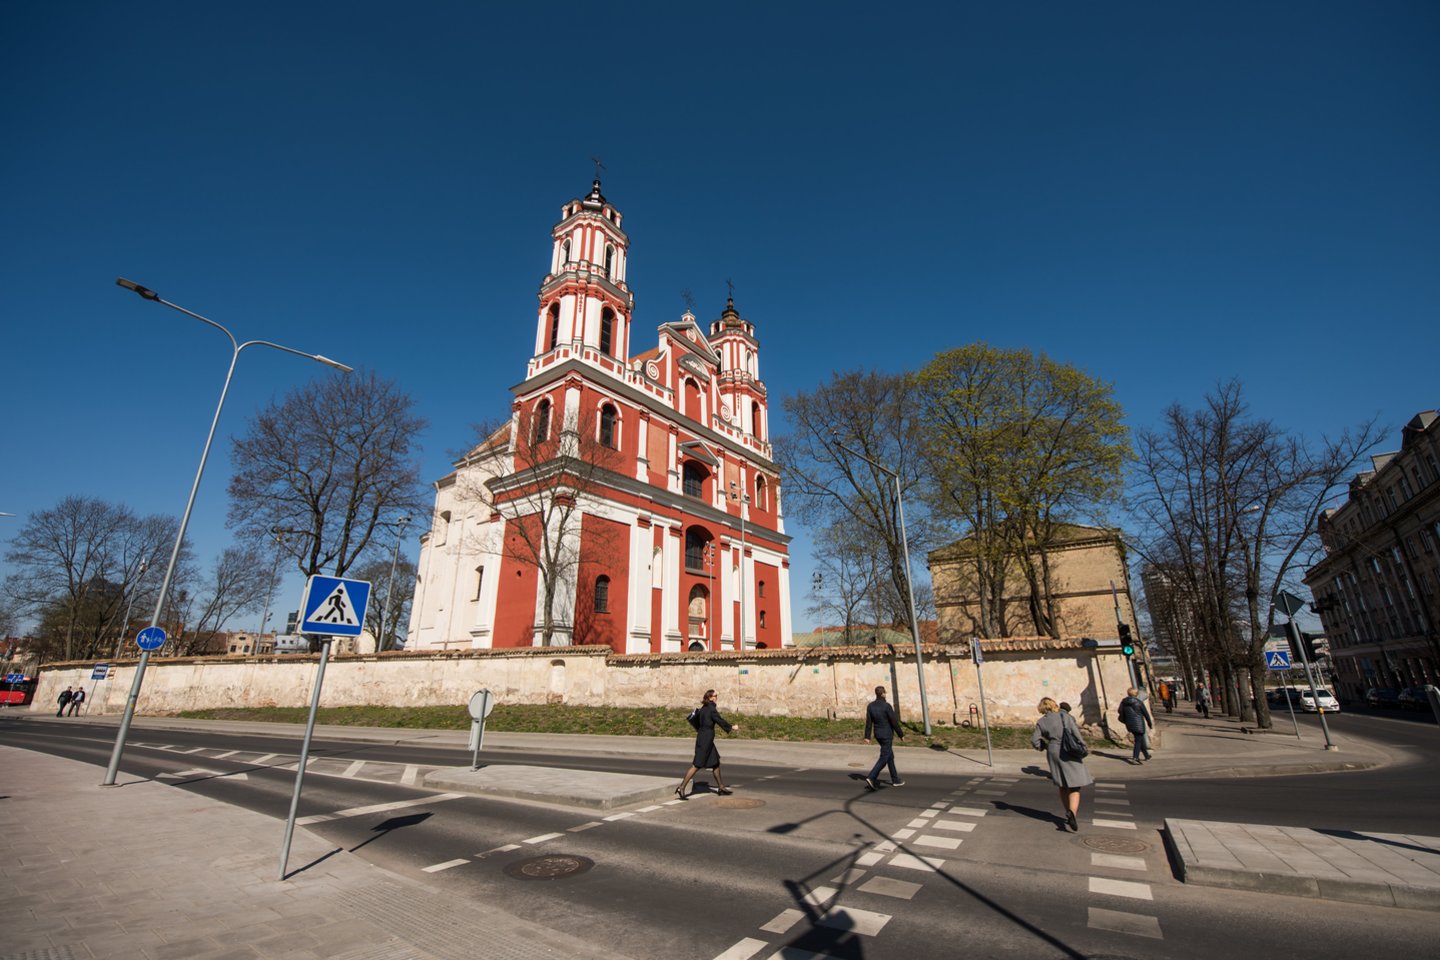 Vilniuje, šalia Lukiškių aikštės esanti Šv. apaštalų Jokūbo ir Pilypo bažnyčios, dominikonų vienuolyno ansamblio bei jau daugiau kaip du dešimtmečiai apleistos buvusios Šv. Jokūbo ligoninės teritorija ypatinga.<br>D.Umbraso nuotr.